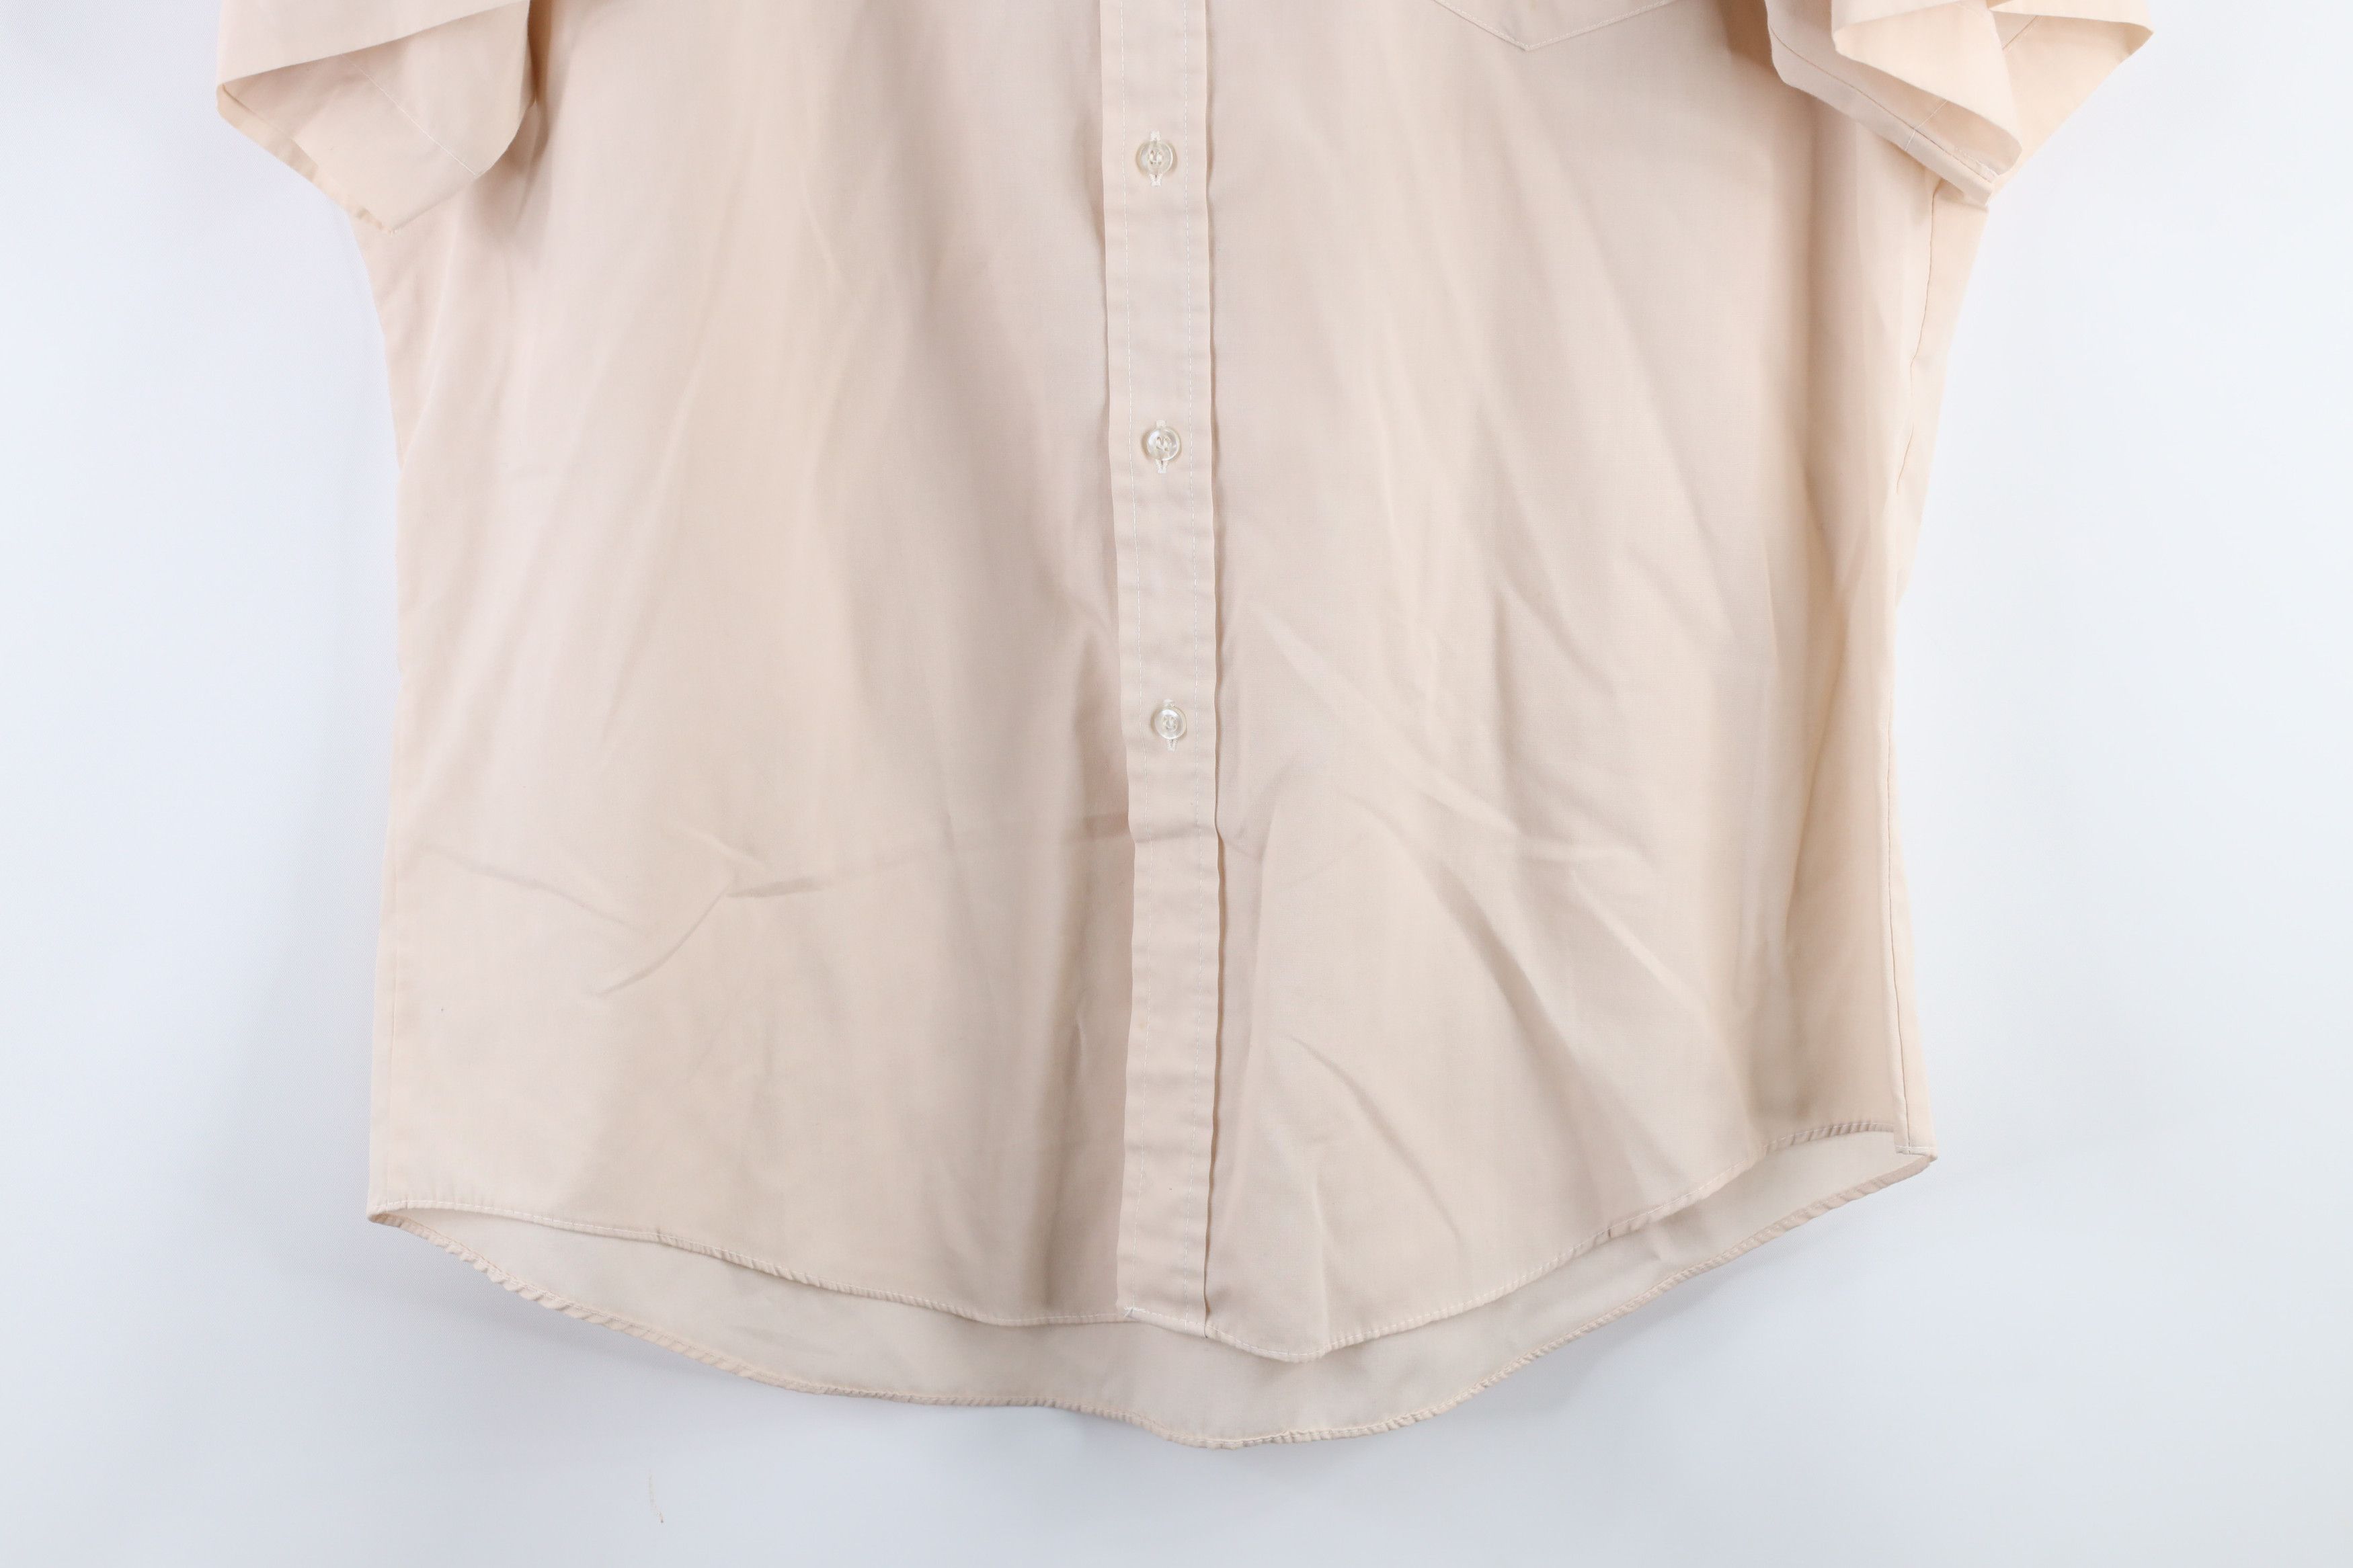 Vintage Vintage 70s Short Sleeve Mechanic Button Shirt Beige Tan Size US L / EU 52-54 / 3 - 3 Thumbnail